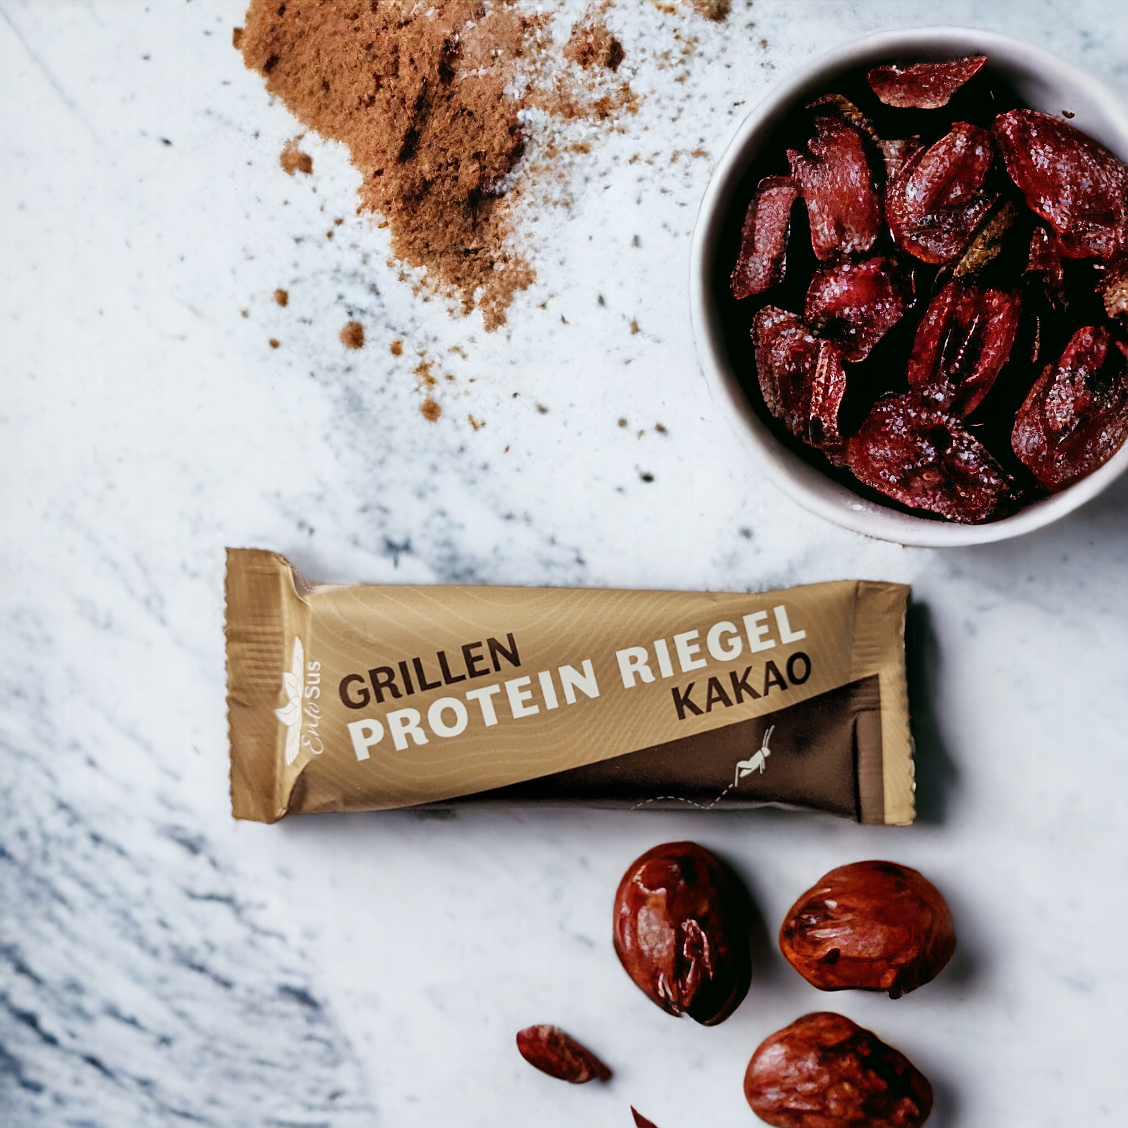 
                  
                    Grillen Protein Riegel Kakao
                  
                